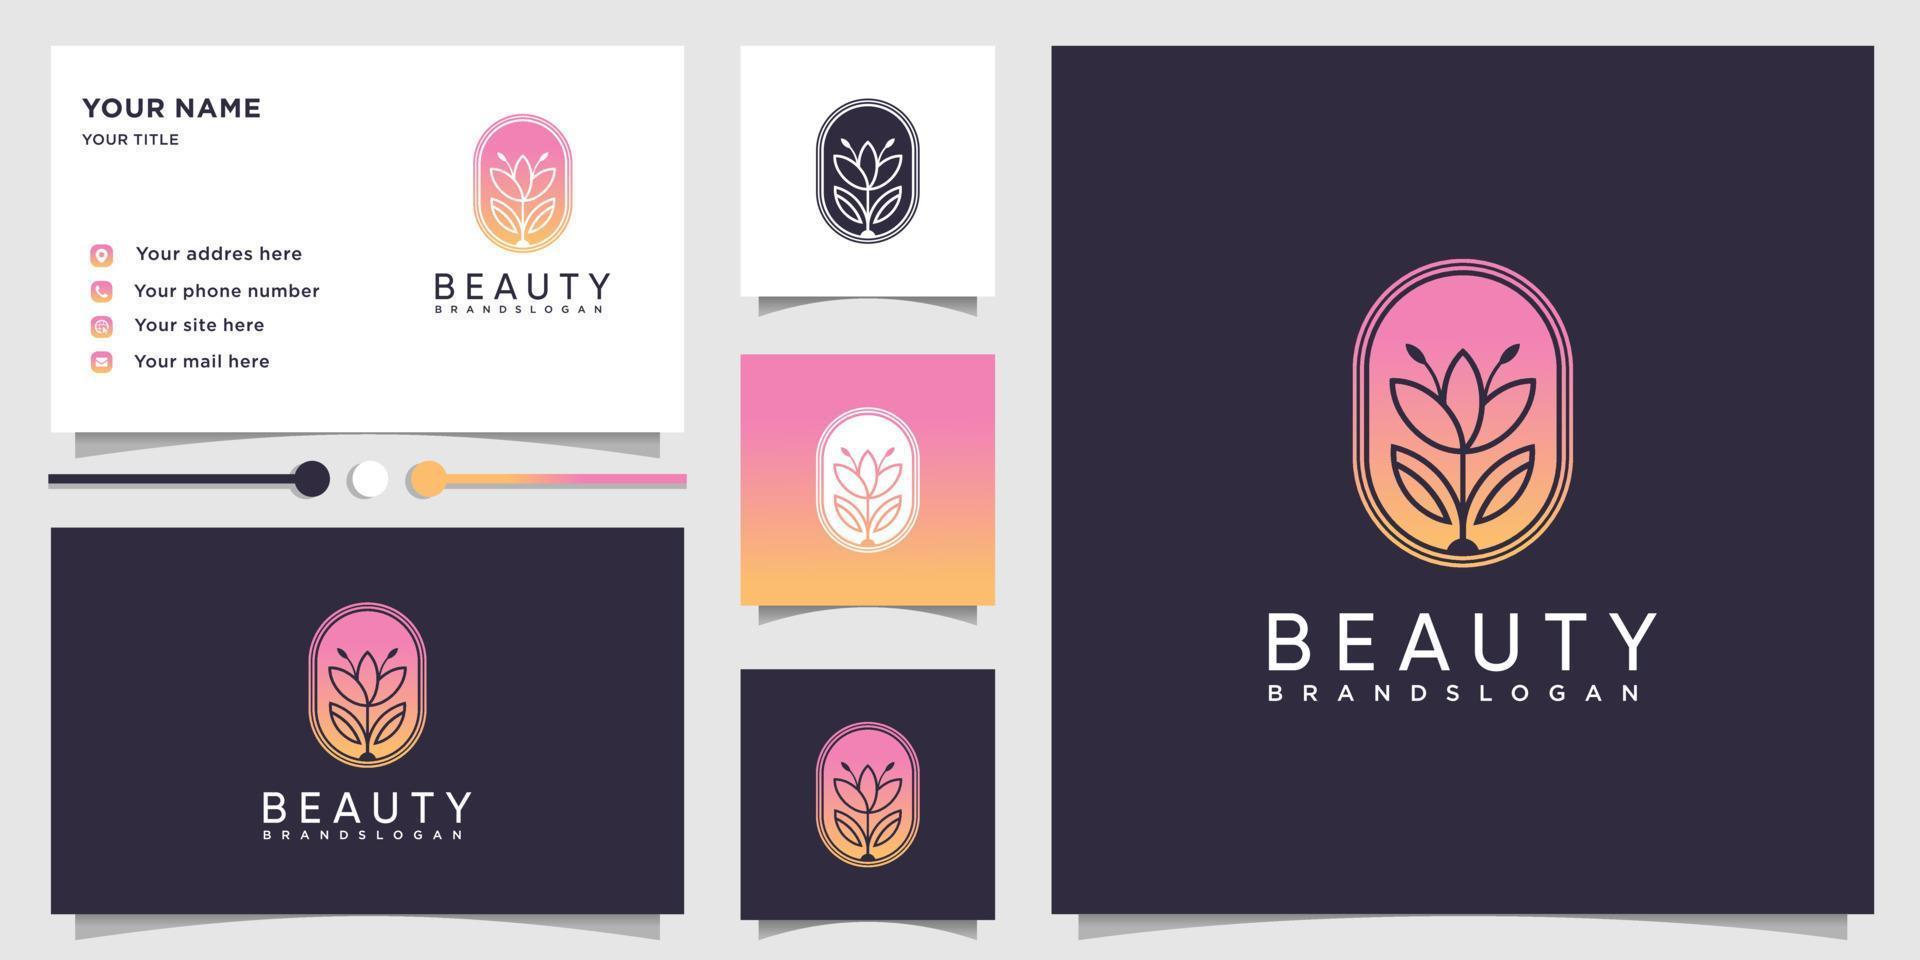 Beauty-Logo mit modernem Farbverlauf-Konzept und Visitenkarten-Design-Vorlage Premium-Vektor vektor